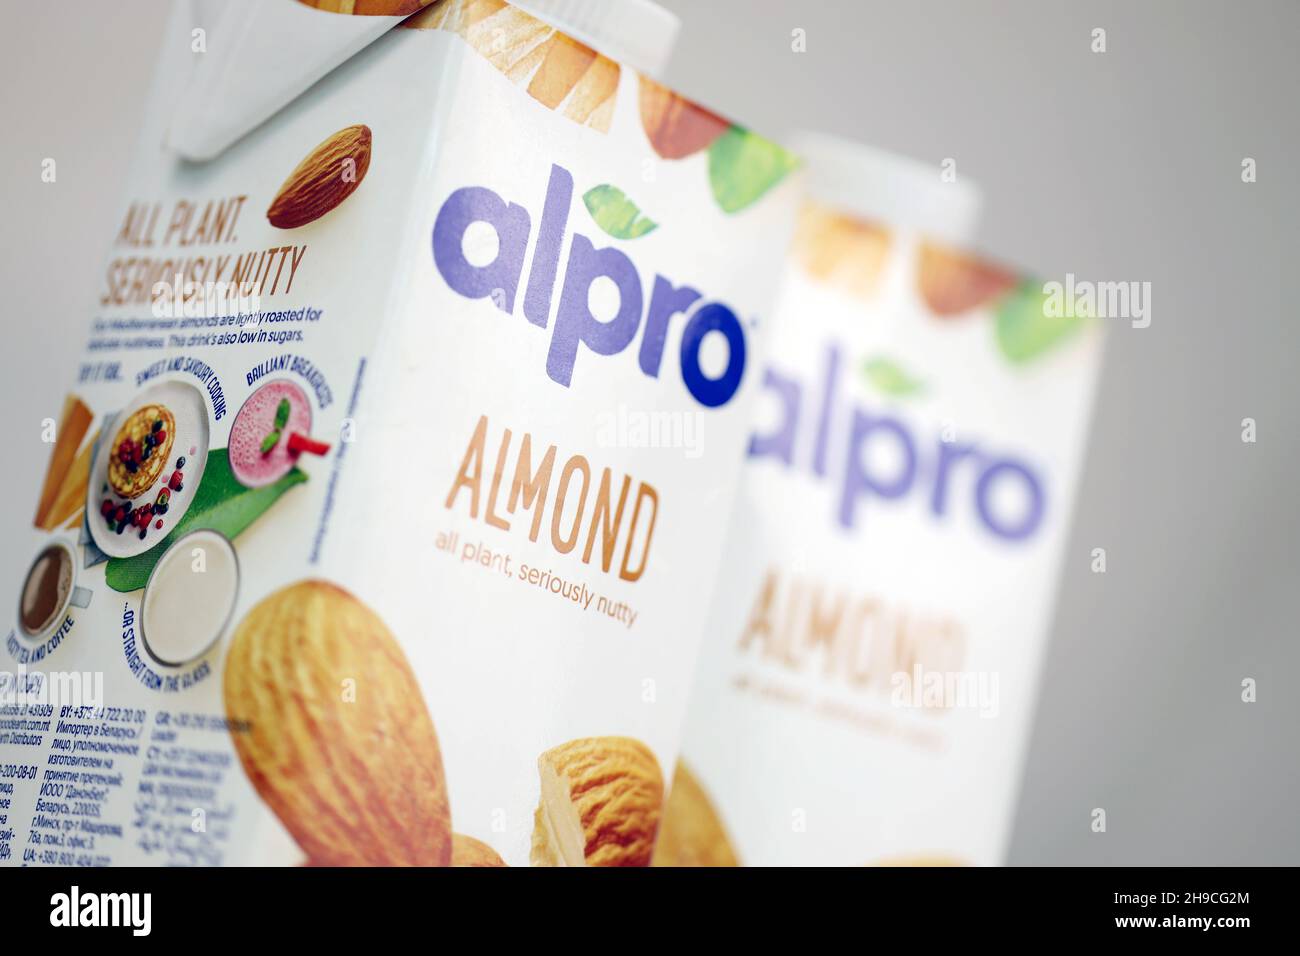 KHARKOV, UKRAINE - 2. JULI 2020: Alpro-Milchpackungen für Mandeln und Haselnüsse, hergestellt von einem europäischen Unternehmen mit Sitz in Wevelgem, Belgien Stockfoto